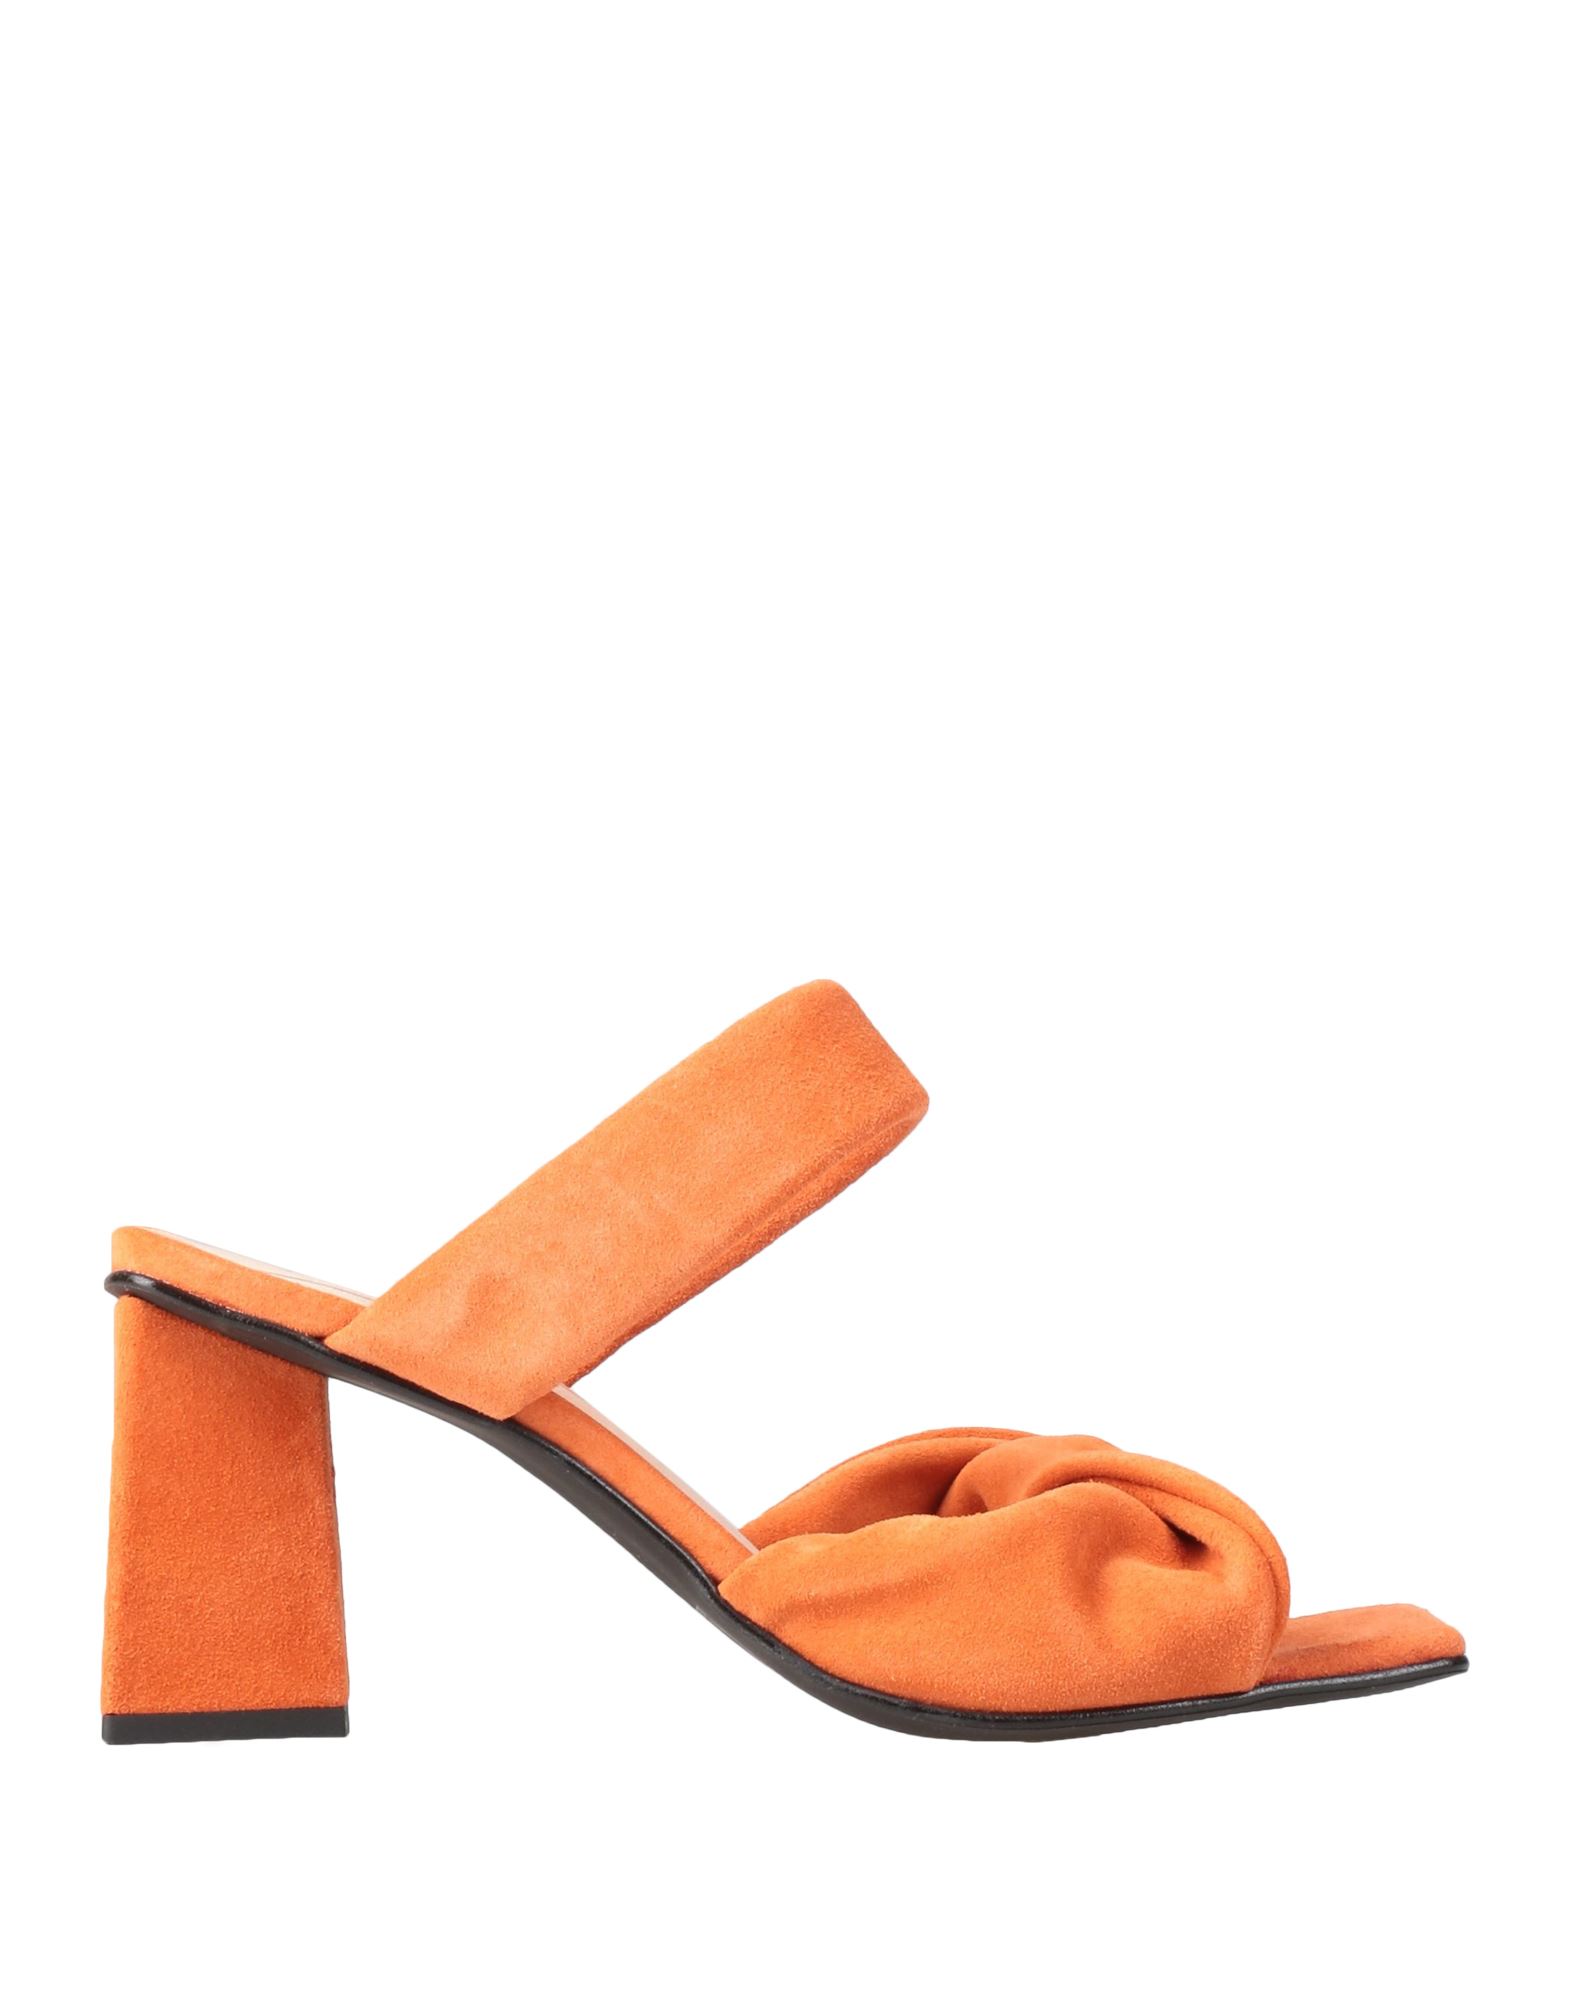 Vero Moda Sandals In Orange